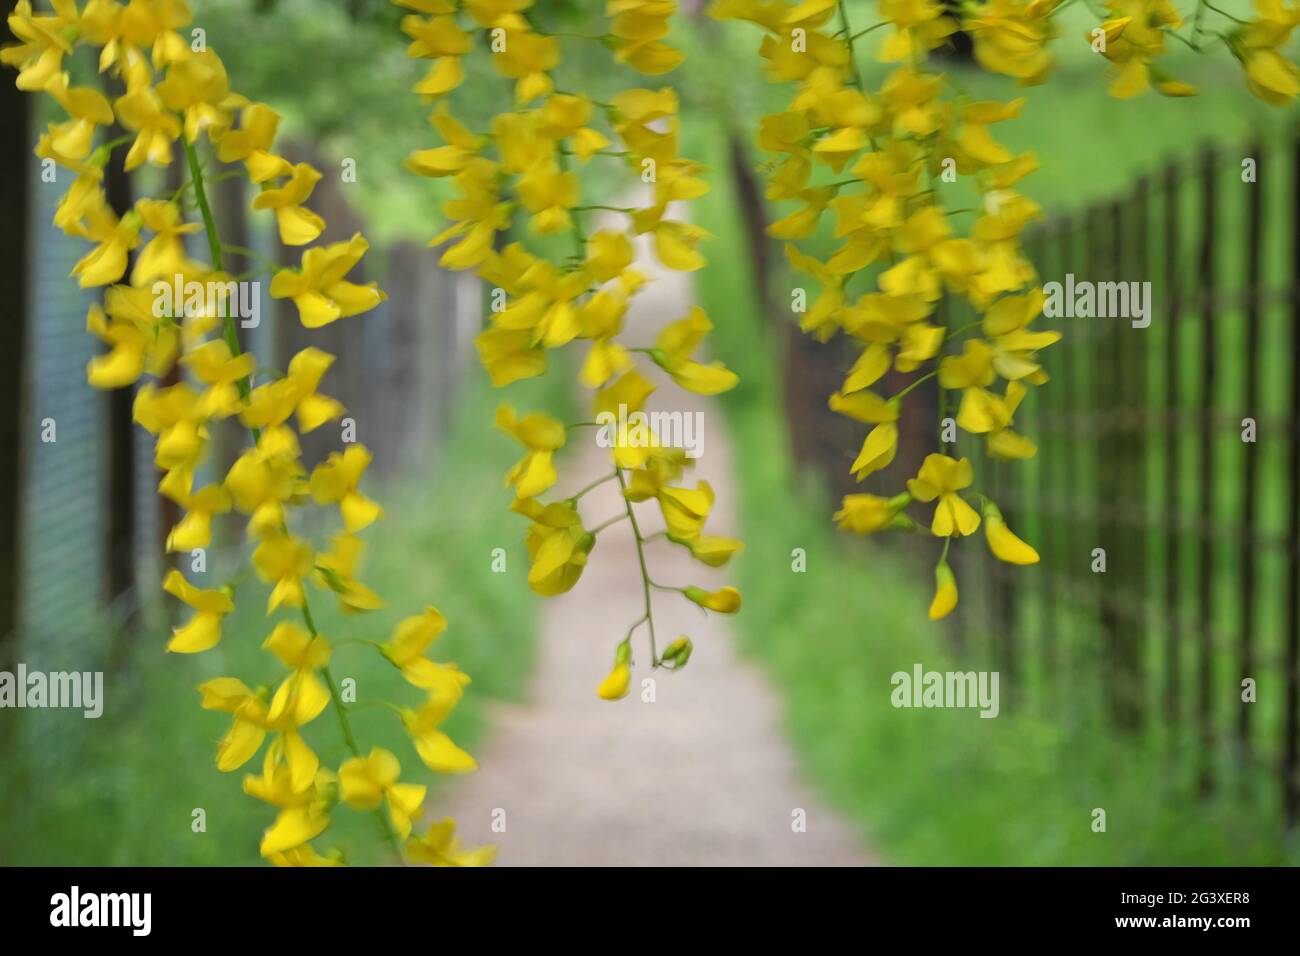 Rideau de Laburnum : promenade printanière à travers un rideau de fleurs jaunes de laburnum. Bedfordshire, Angleterre. Banque D'Images